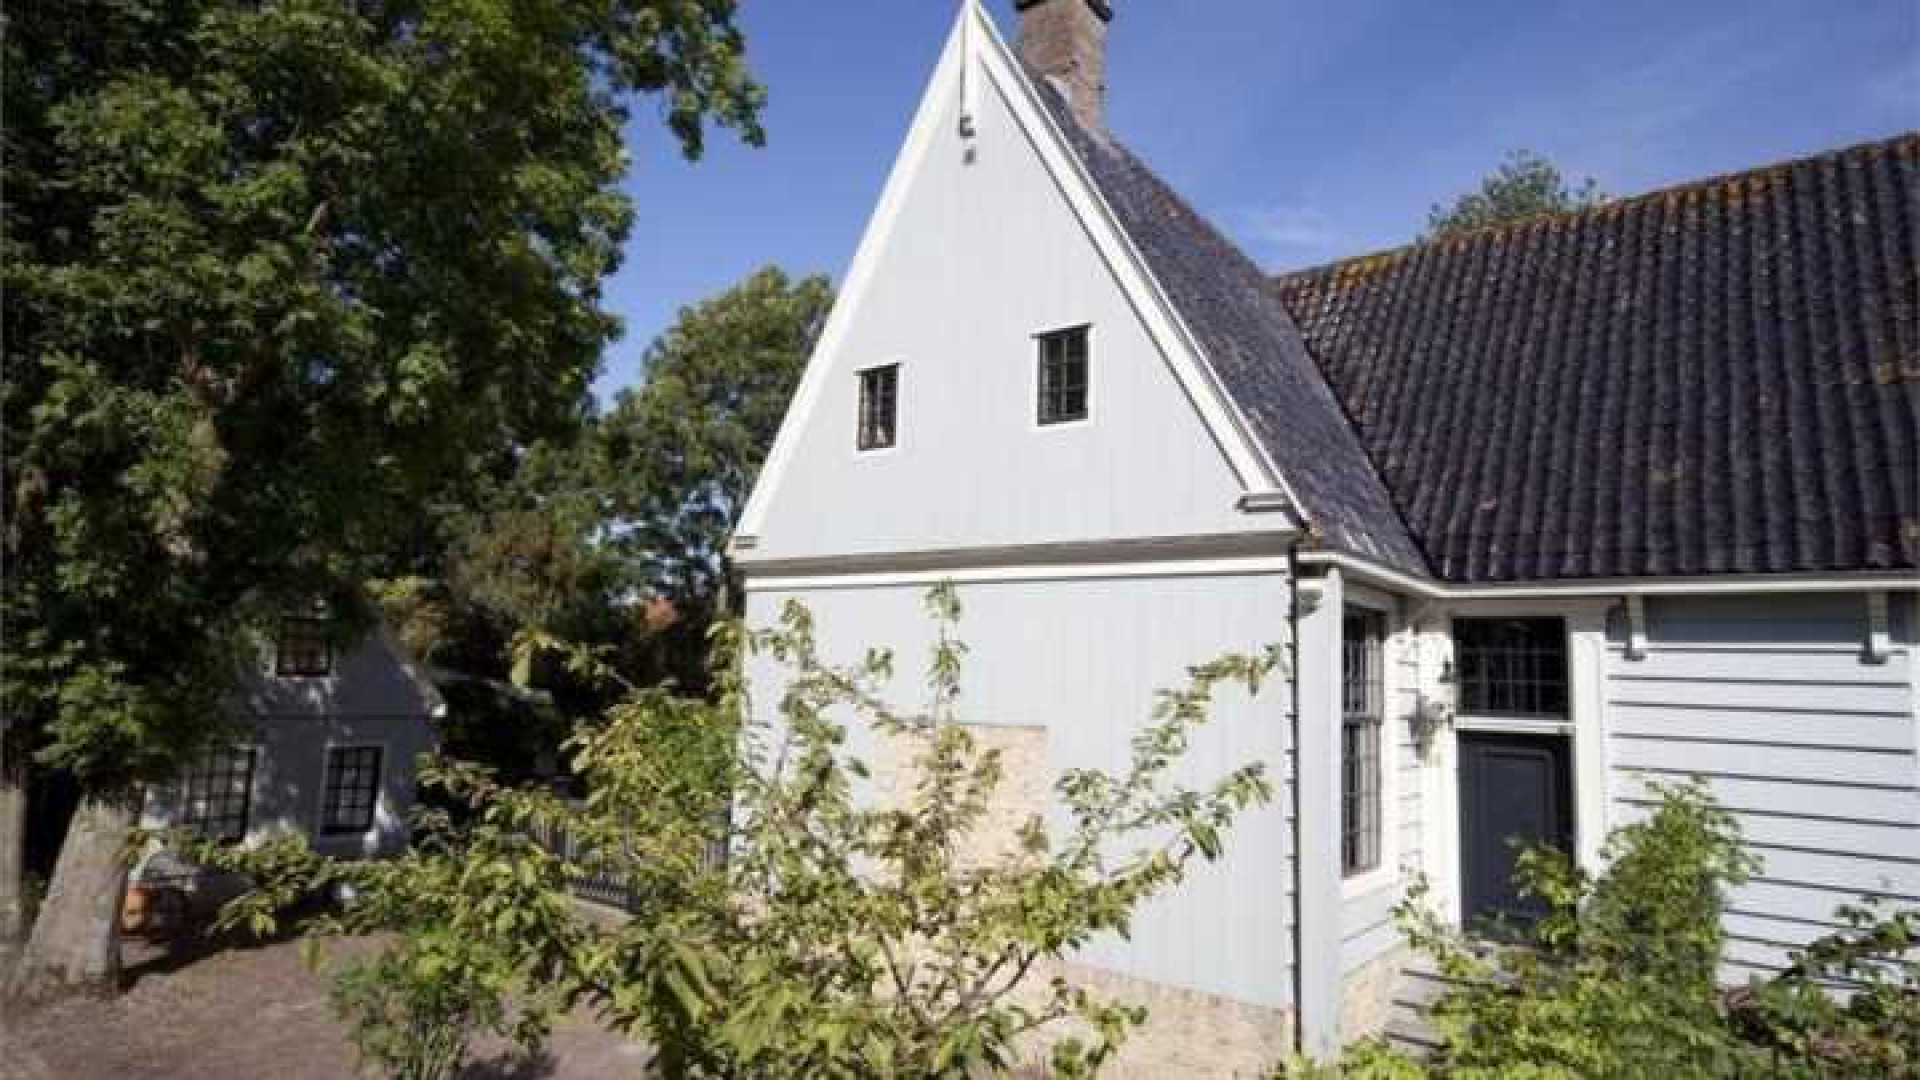 Wilbert Gieske verruilt Amsterdam voor prachtig huurhuis in Broek in Waterland. Zie foto's 19